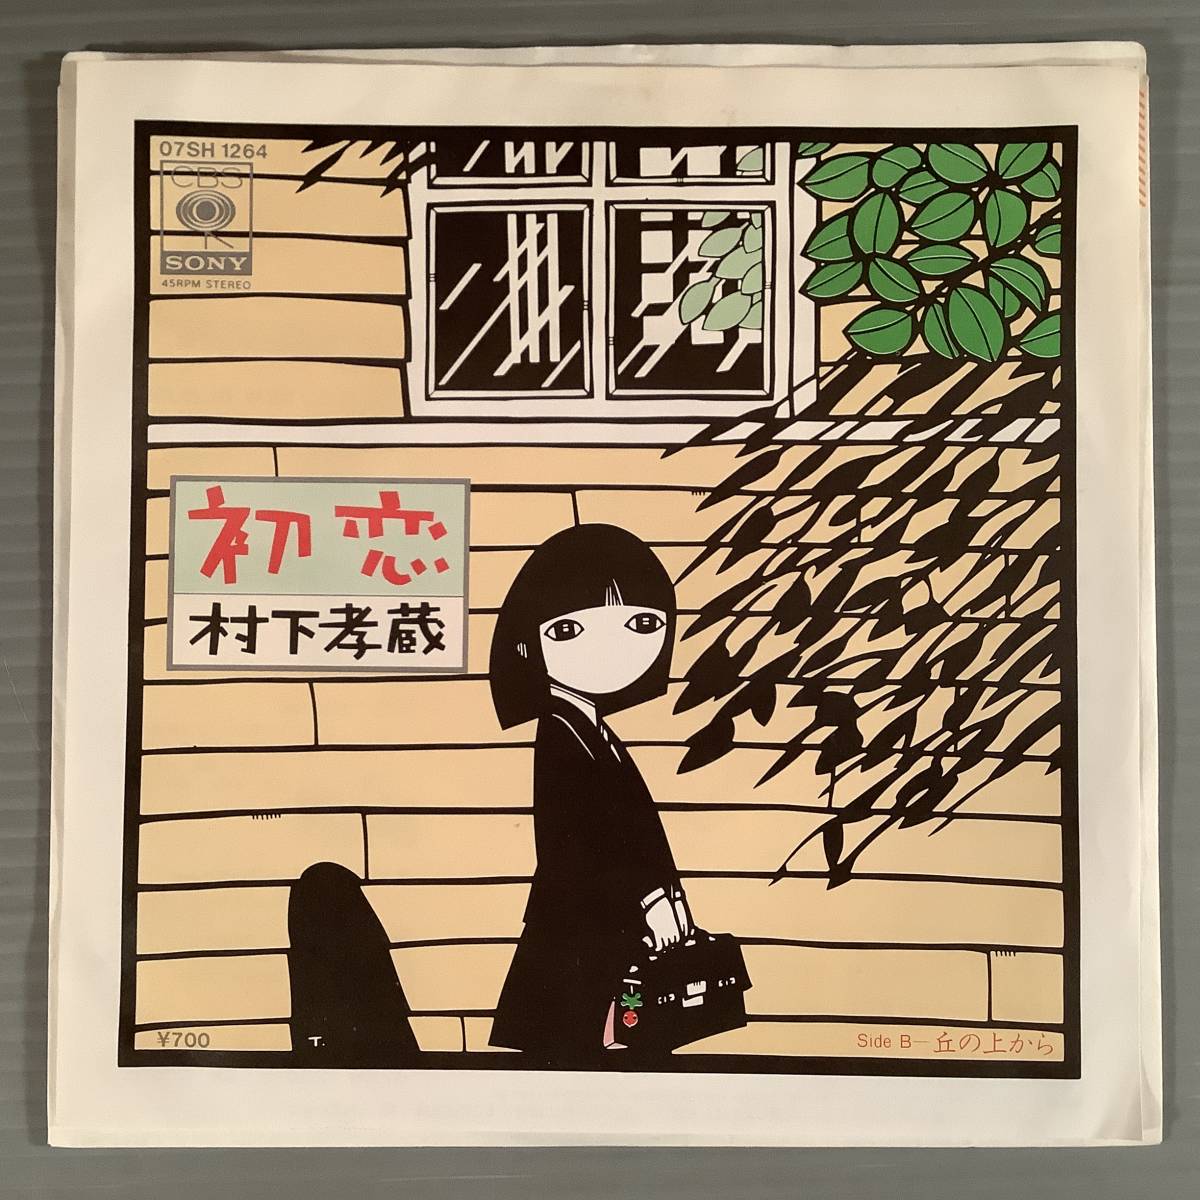 Одиночная доска (EP) ◆ Kozo Murashita "Hatsukoi" "с вершины холма" ◆ Красивые товары!